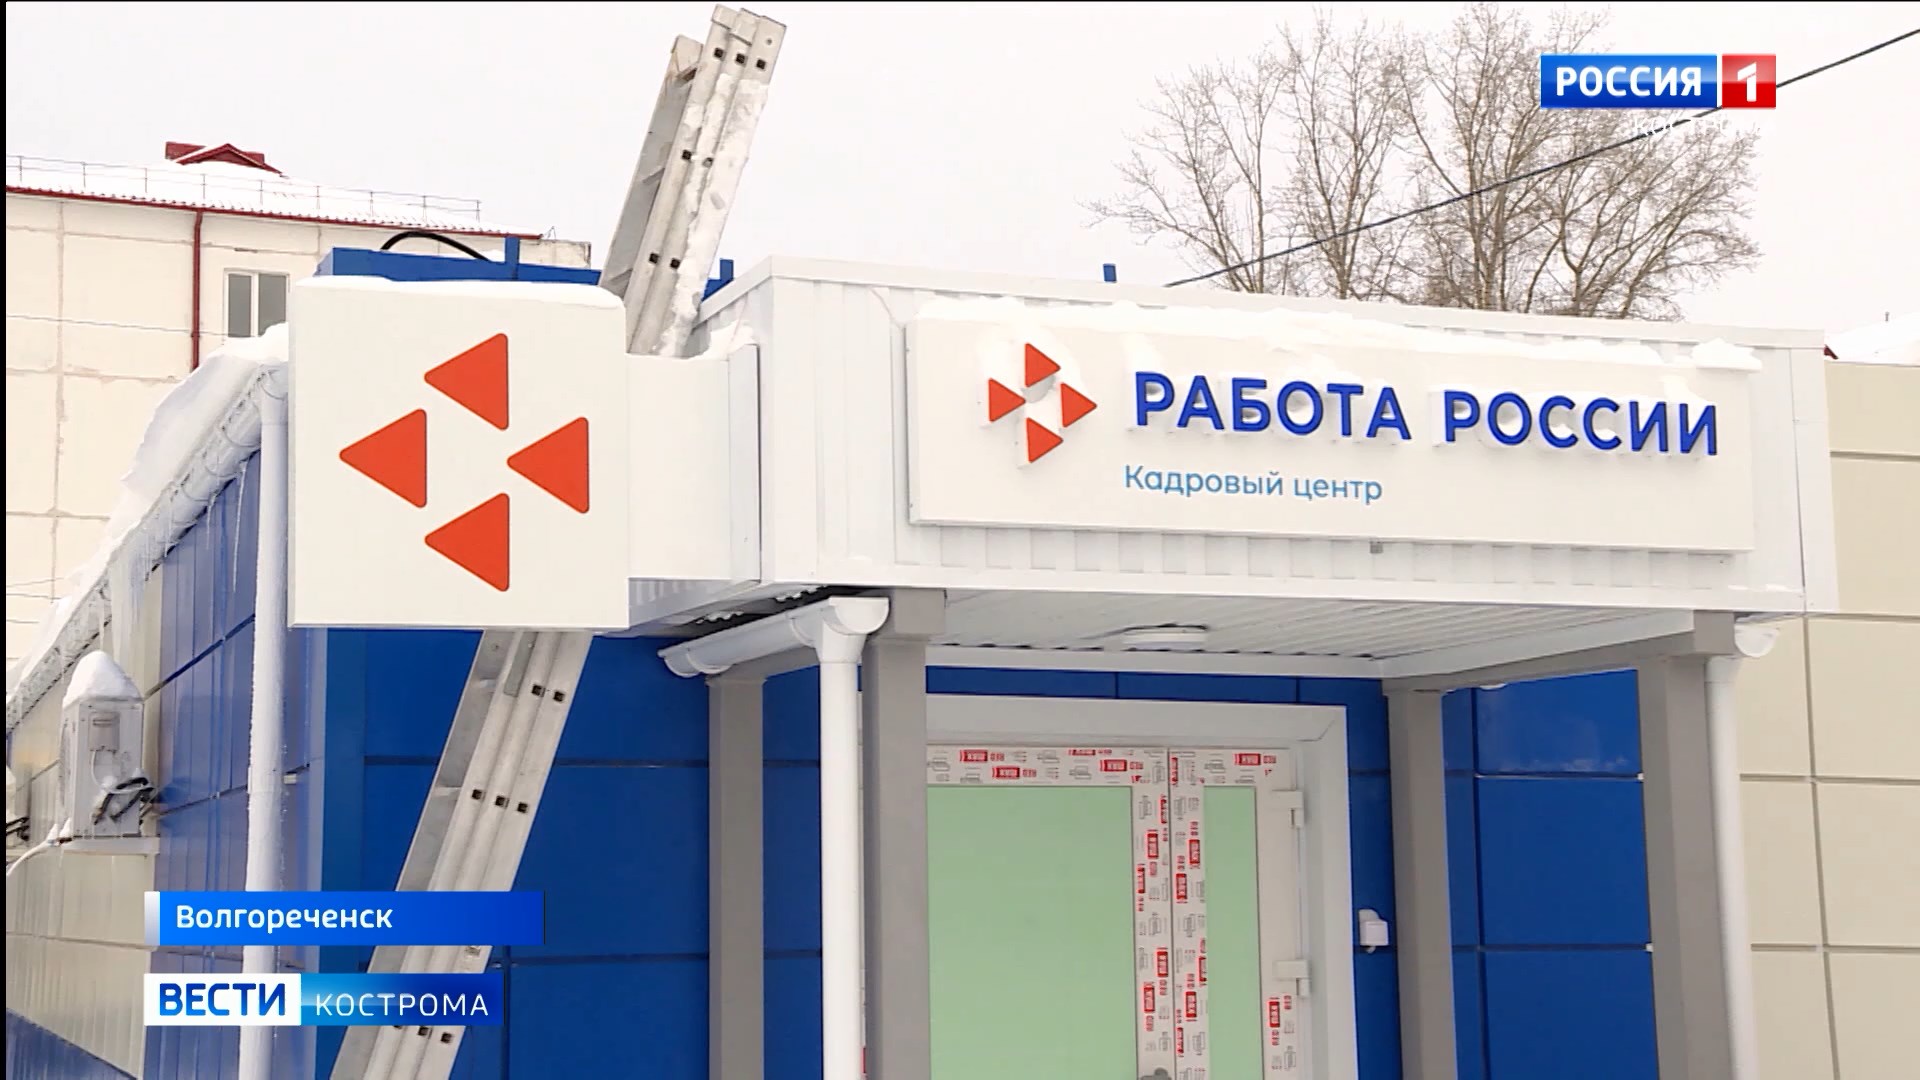 Костромская область вошла в ТОП-5 регионов России по занятости населения